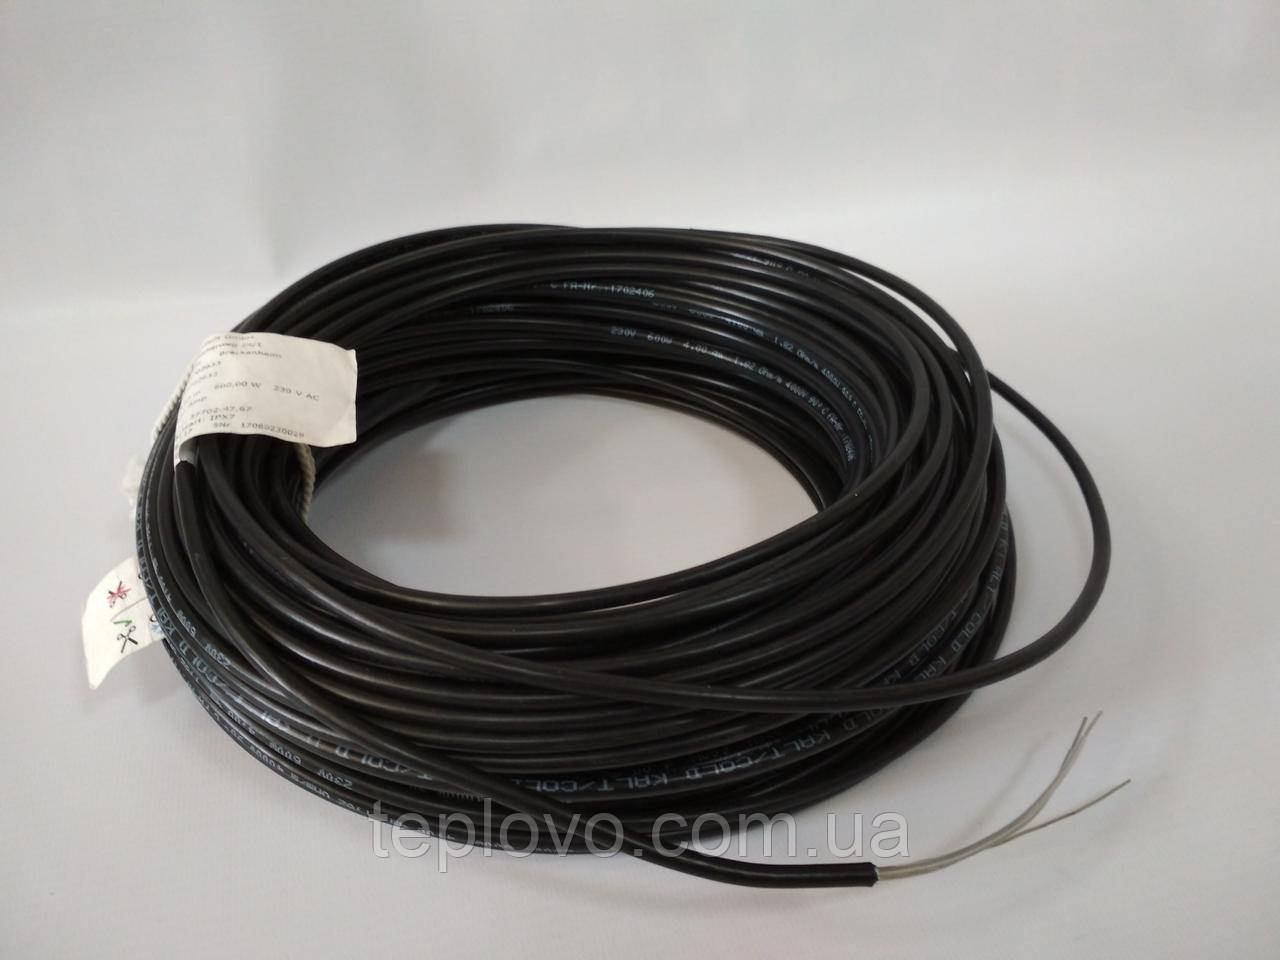 Двожильний нагрівальний кабель Hemstedt BR-IM 17, 1500 Вт (6.5 - 10.9 м2), тепла підлога